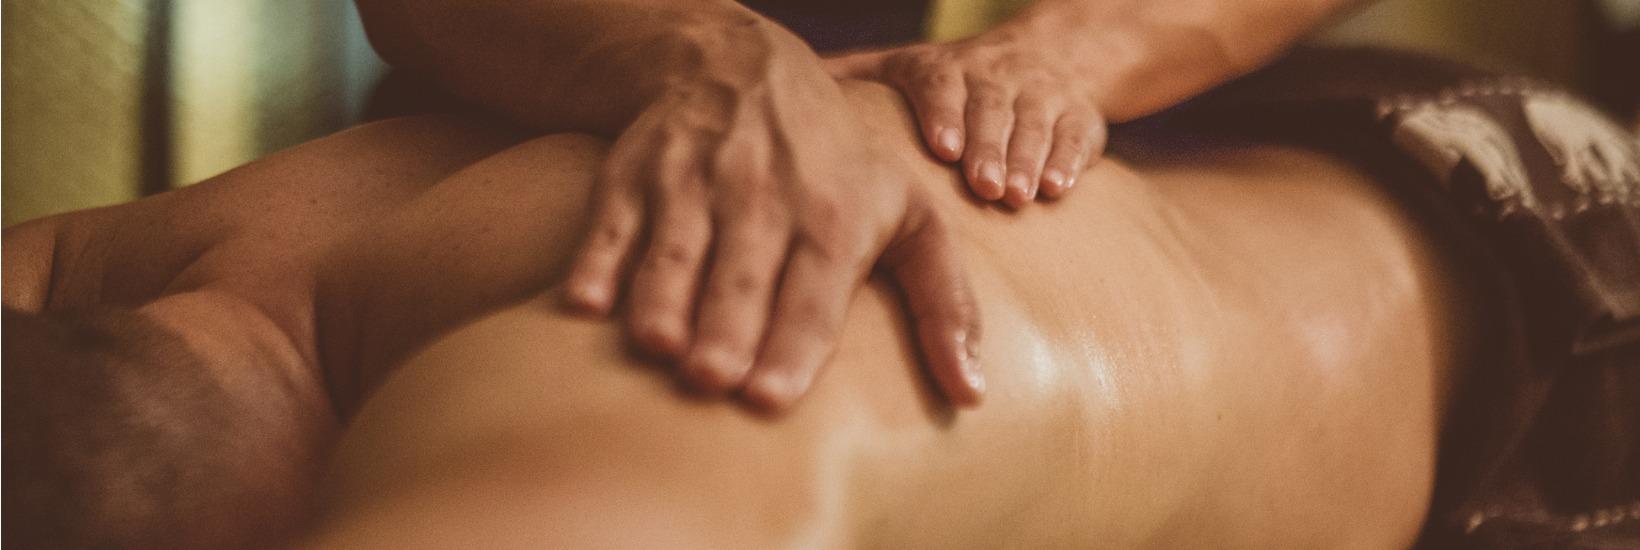 Die Prostata-Massage ist für viele Männer ein wahrer Genuss